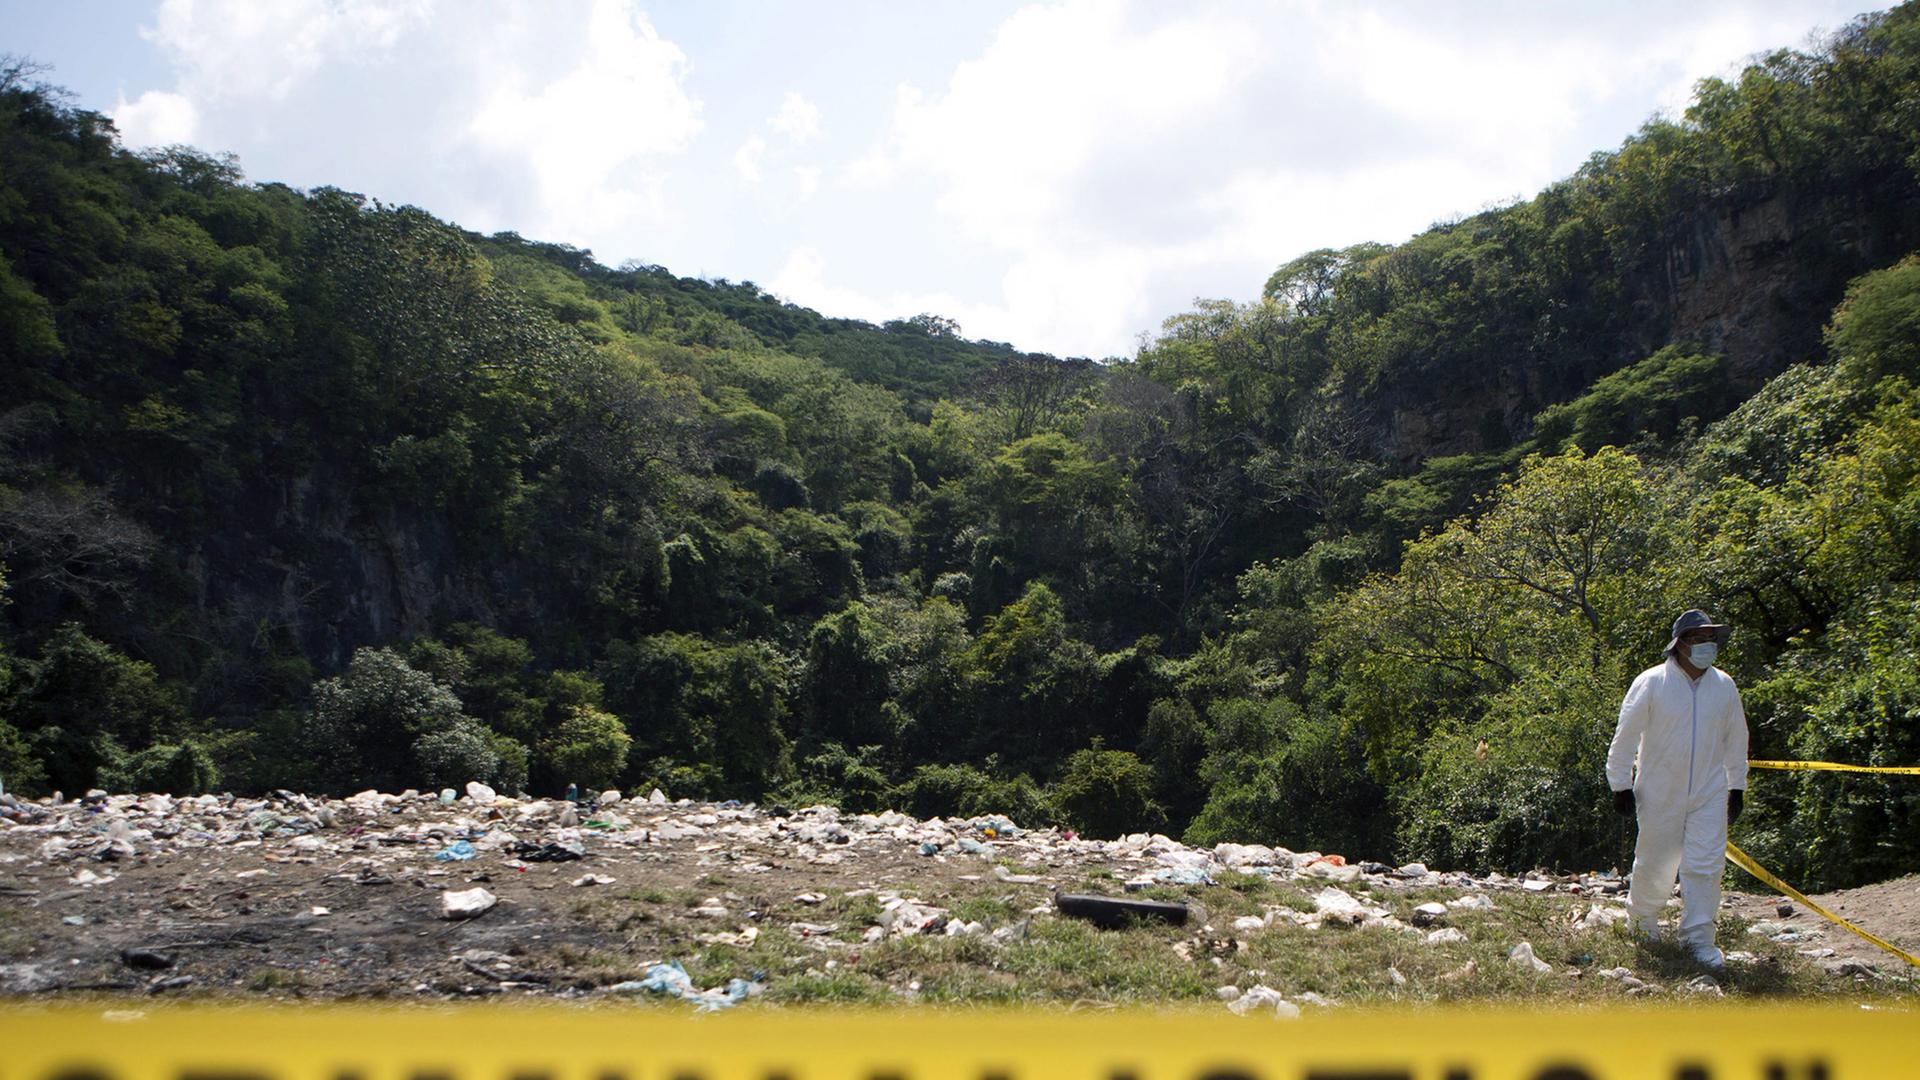 Hinter einer gelben Absperrung mit der schwarzen Aufschrift "Criminalistica" sieht man eine Müllkippe mit einem in weiße Schutzkleidung gehüllten Forensiker, im Hintergrund ein bewaldeter Hügel.